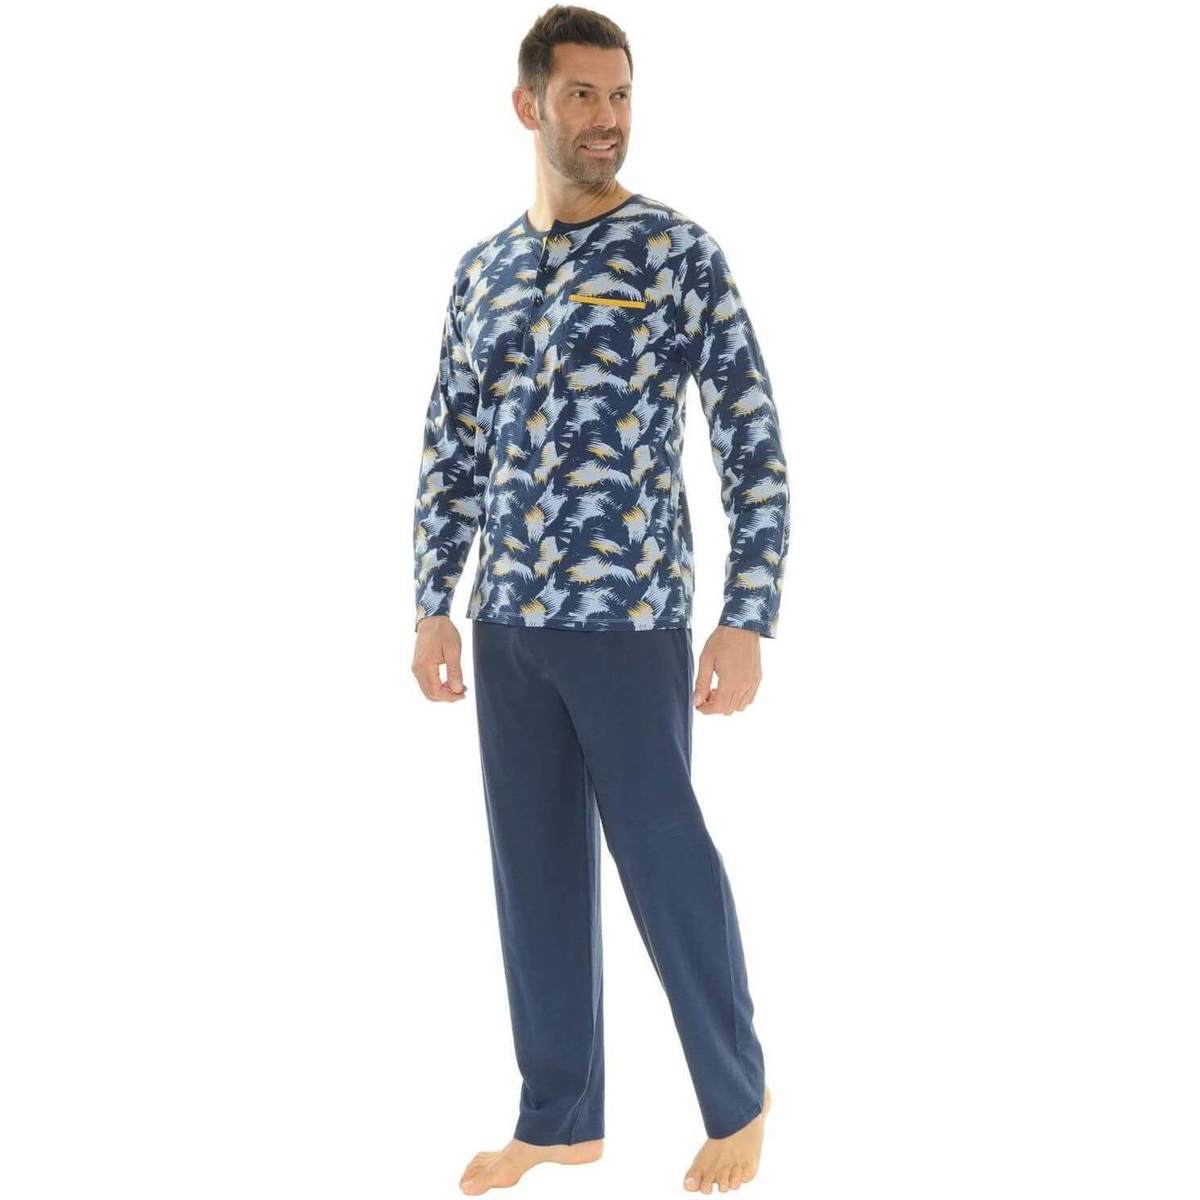 Îmbracaminte Bărbați Pijamale și Cămăsi de noapte Christian Cane NIL albastru